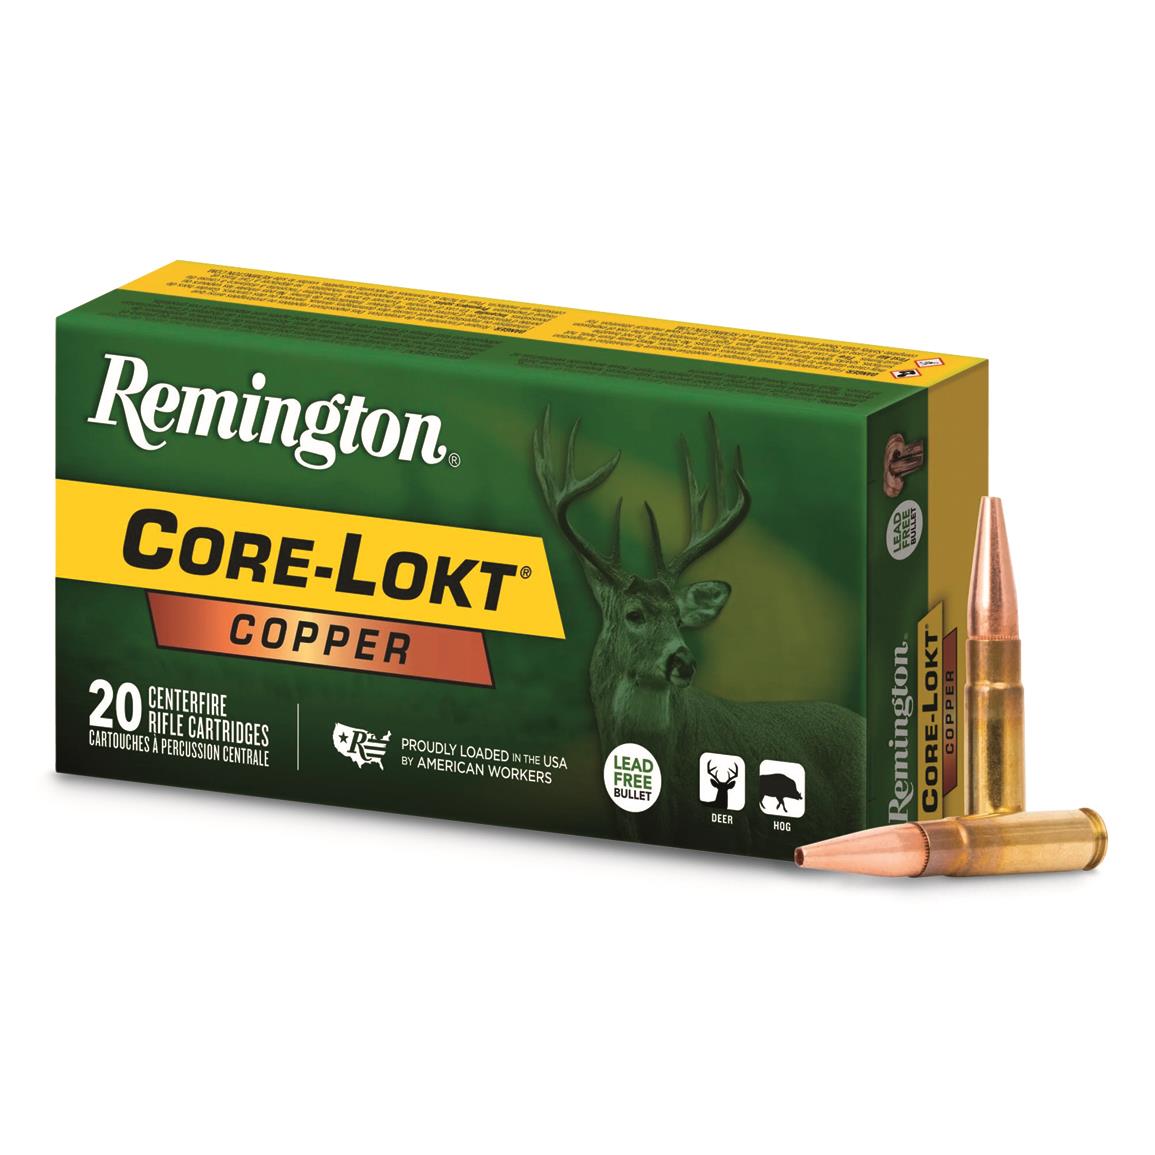 Remington Core-Lokt Copper, 300 BLK, Copper HP, 120 Grain, 20 Rounds